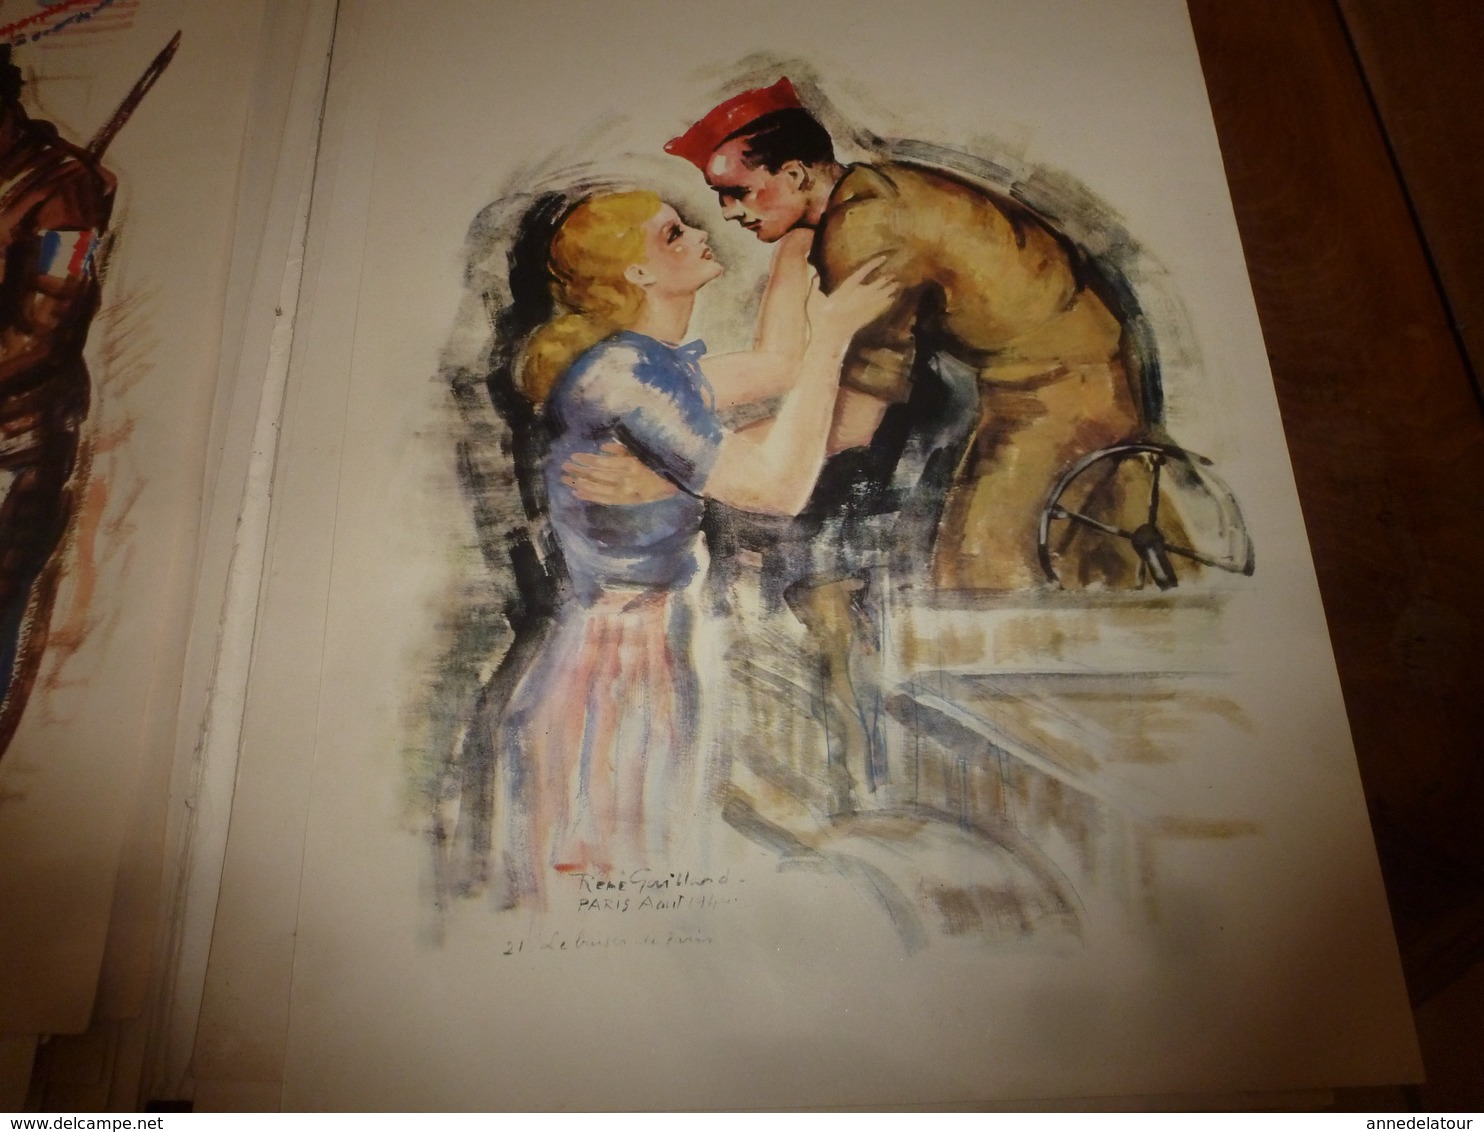 1944 PAGES DE GLOIRE -Libération de Paris 18-27 Août 1944 - en  21 Aquarelles de René Gaillard ,Lieutenant FFI